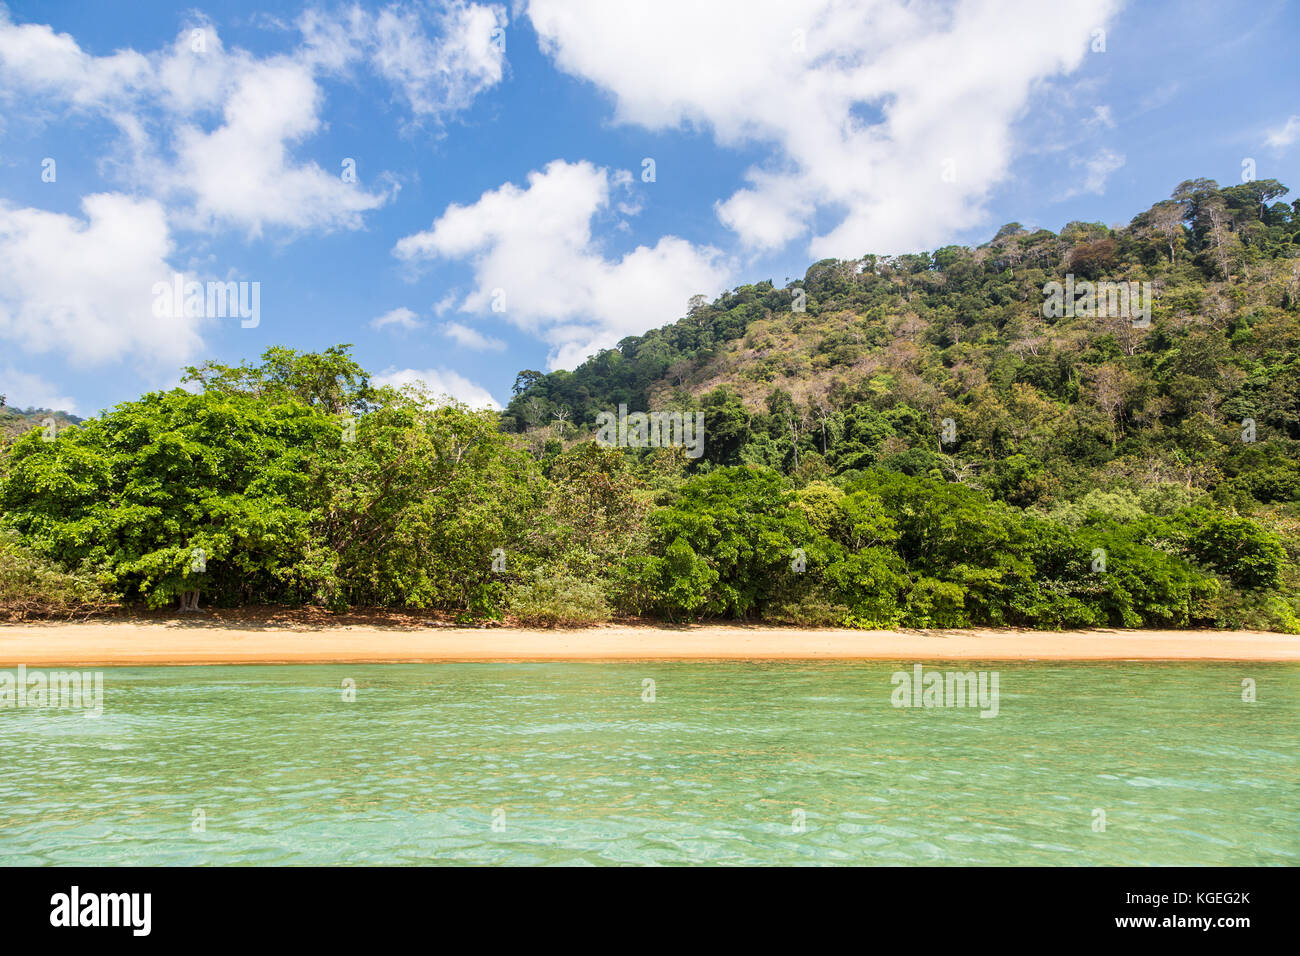 Cadre idyllique plage vide dans l'île de tioman en mer de Chine du sud en Malaisie lors d'une journée ensoleillée en Asie du sud-est. Banque D'Images